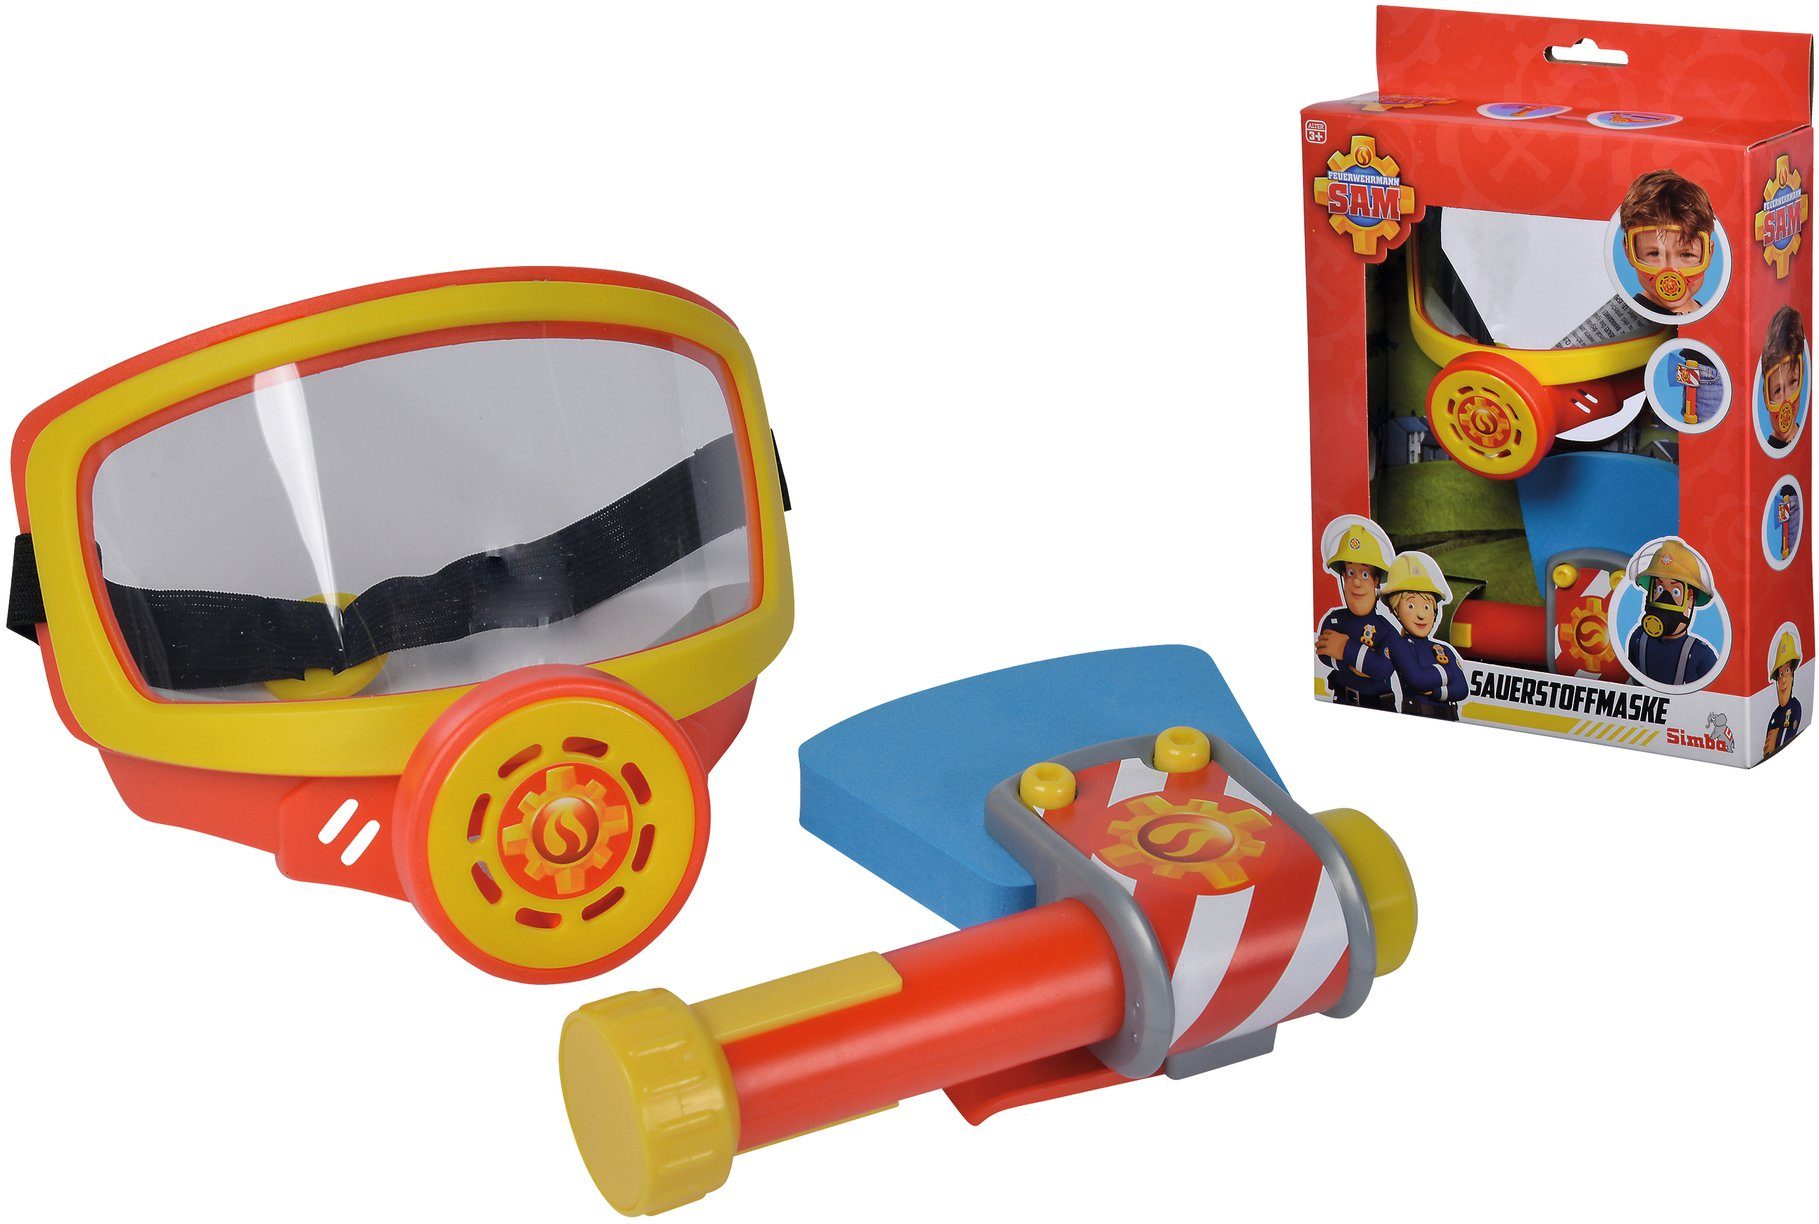 SIMBA Spielzeug-Sauerstoffmaske »Feuerwehrmann Sam, Feuerwehr  Sauerstoffmaske«, (Set, 2-tlg), mit Spielzeug-Axt online kaufen | OTTO